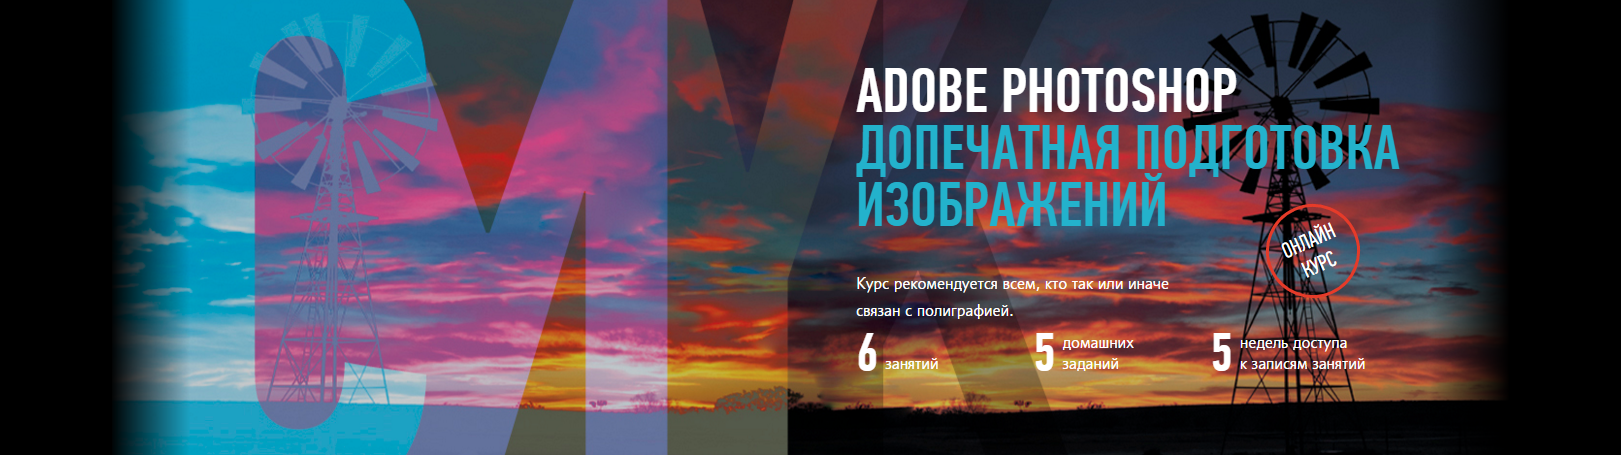 2015-12-08 09-39-36 Adobe Photoshop. Допечатная подготовка изображений - Google Chrome.png